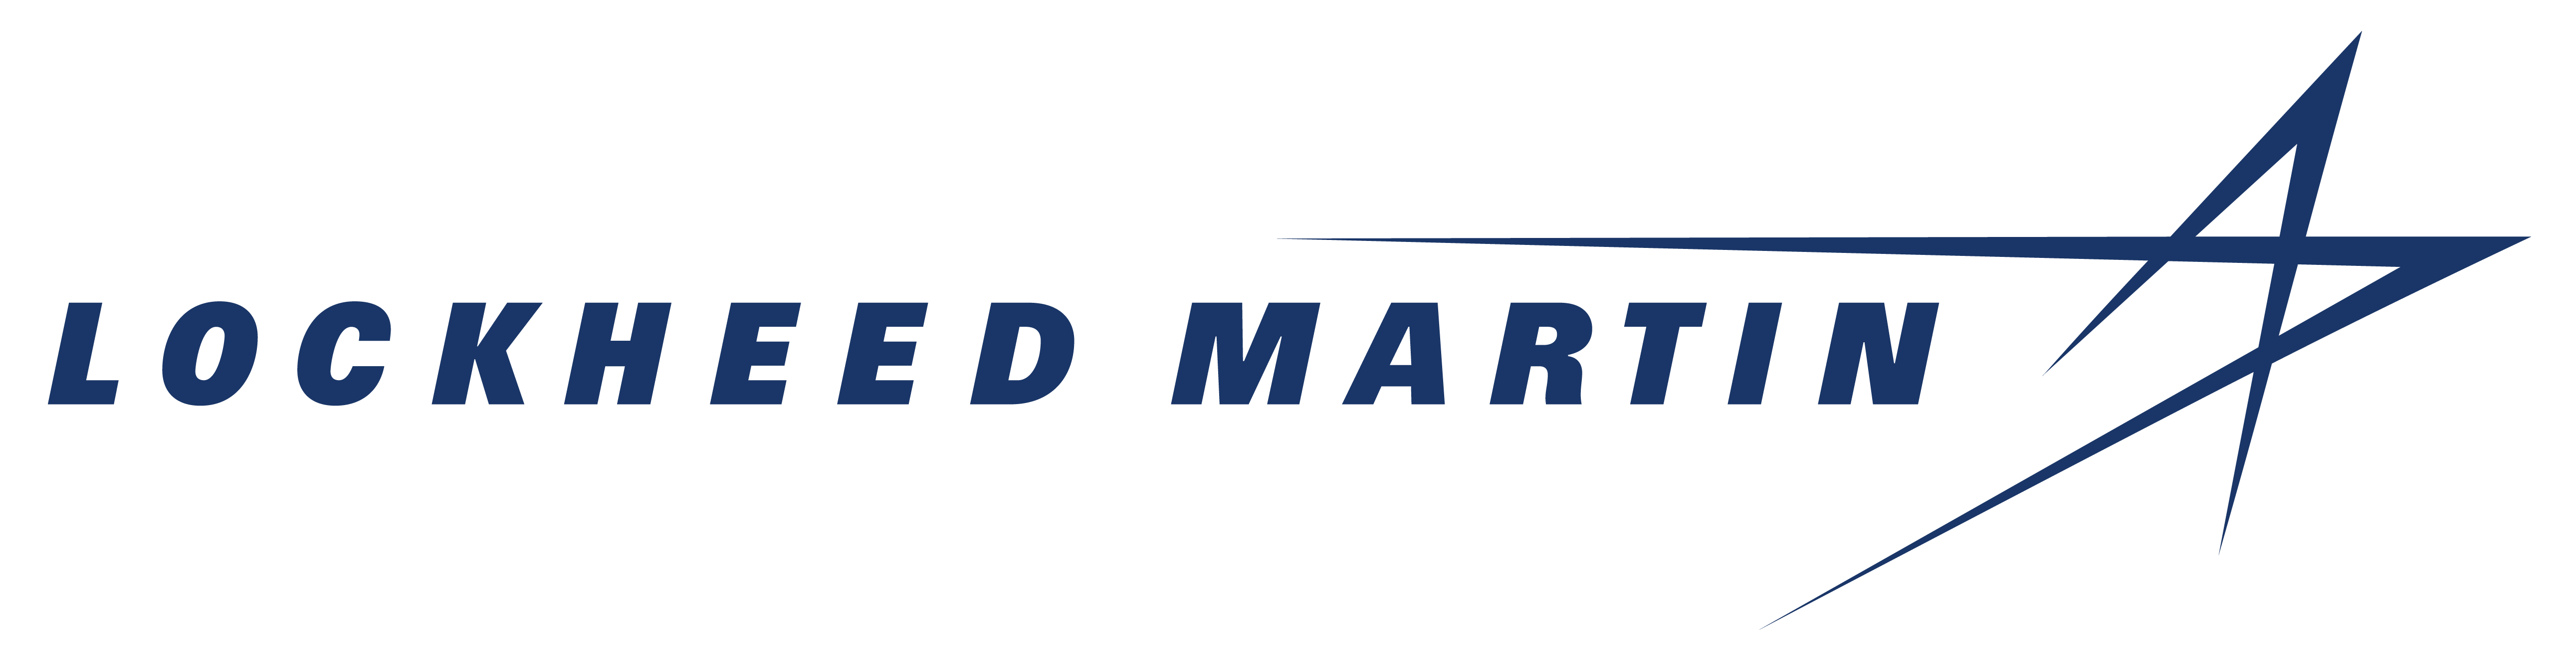 Lockheed Martin - Baltimore logo